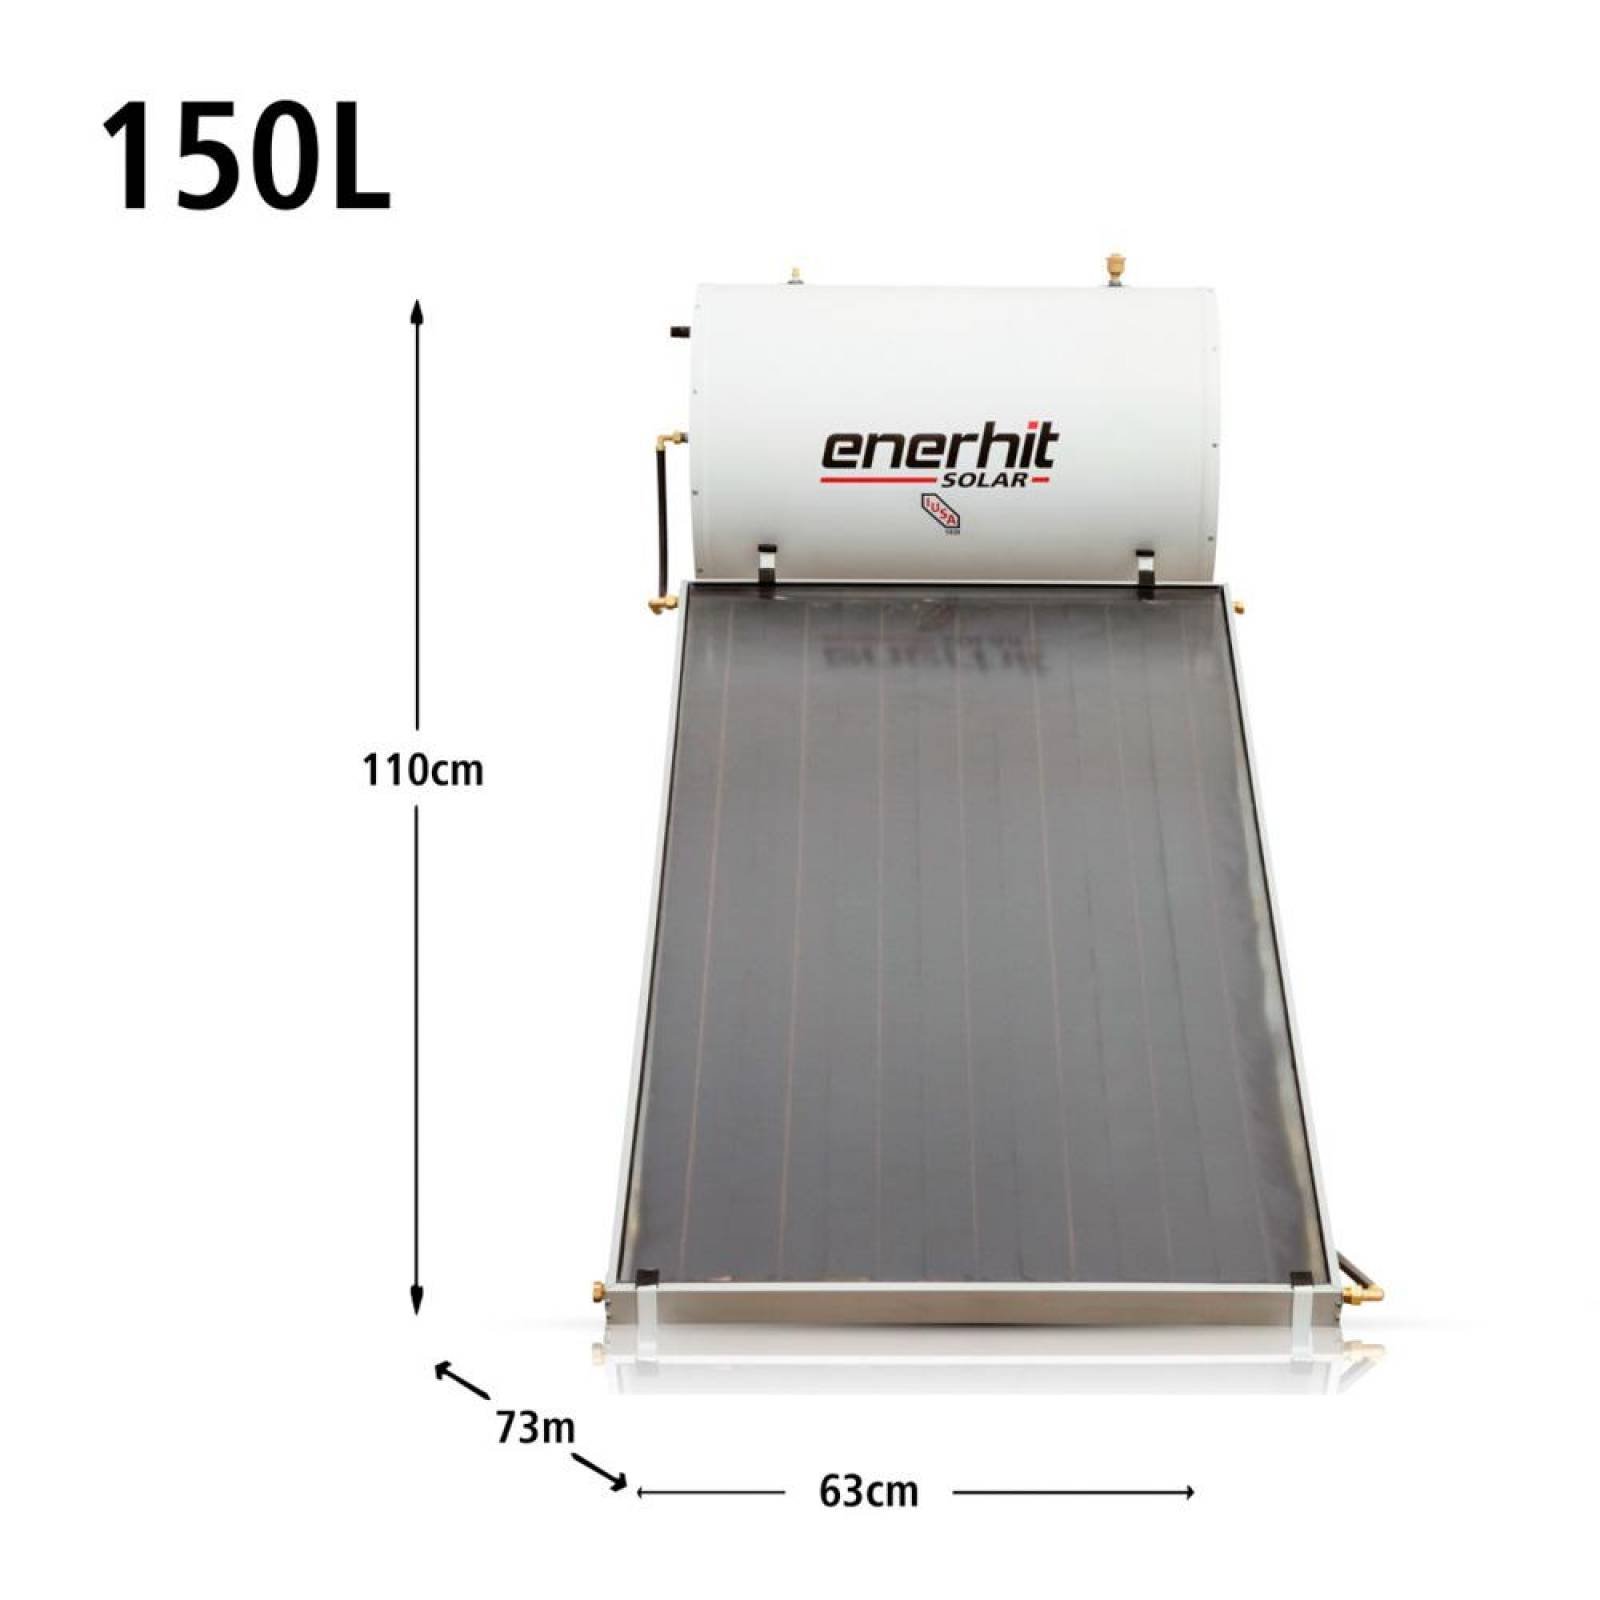 Calentador solar con cubierta de vidrio, 150 L, Enerhit 